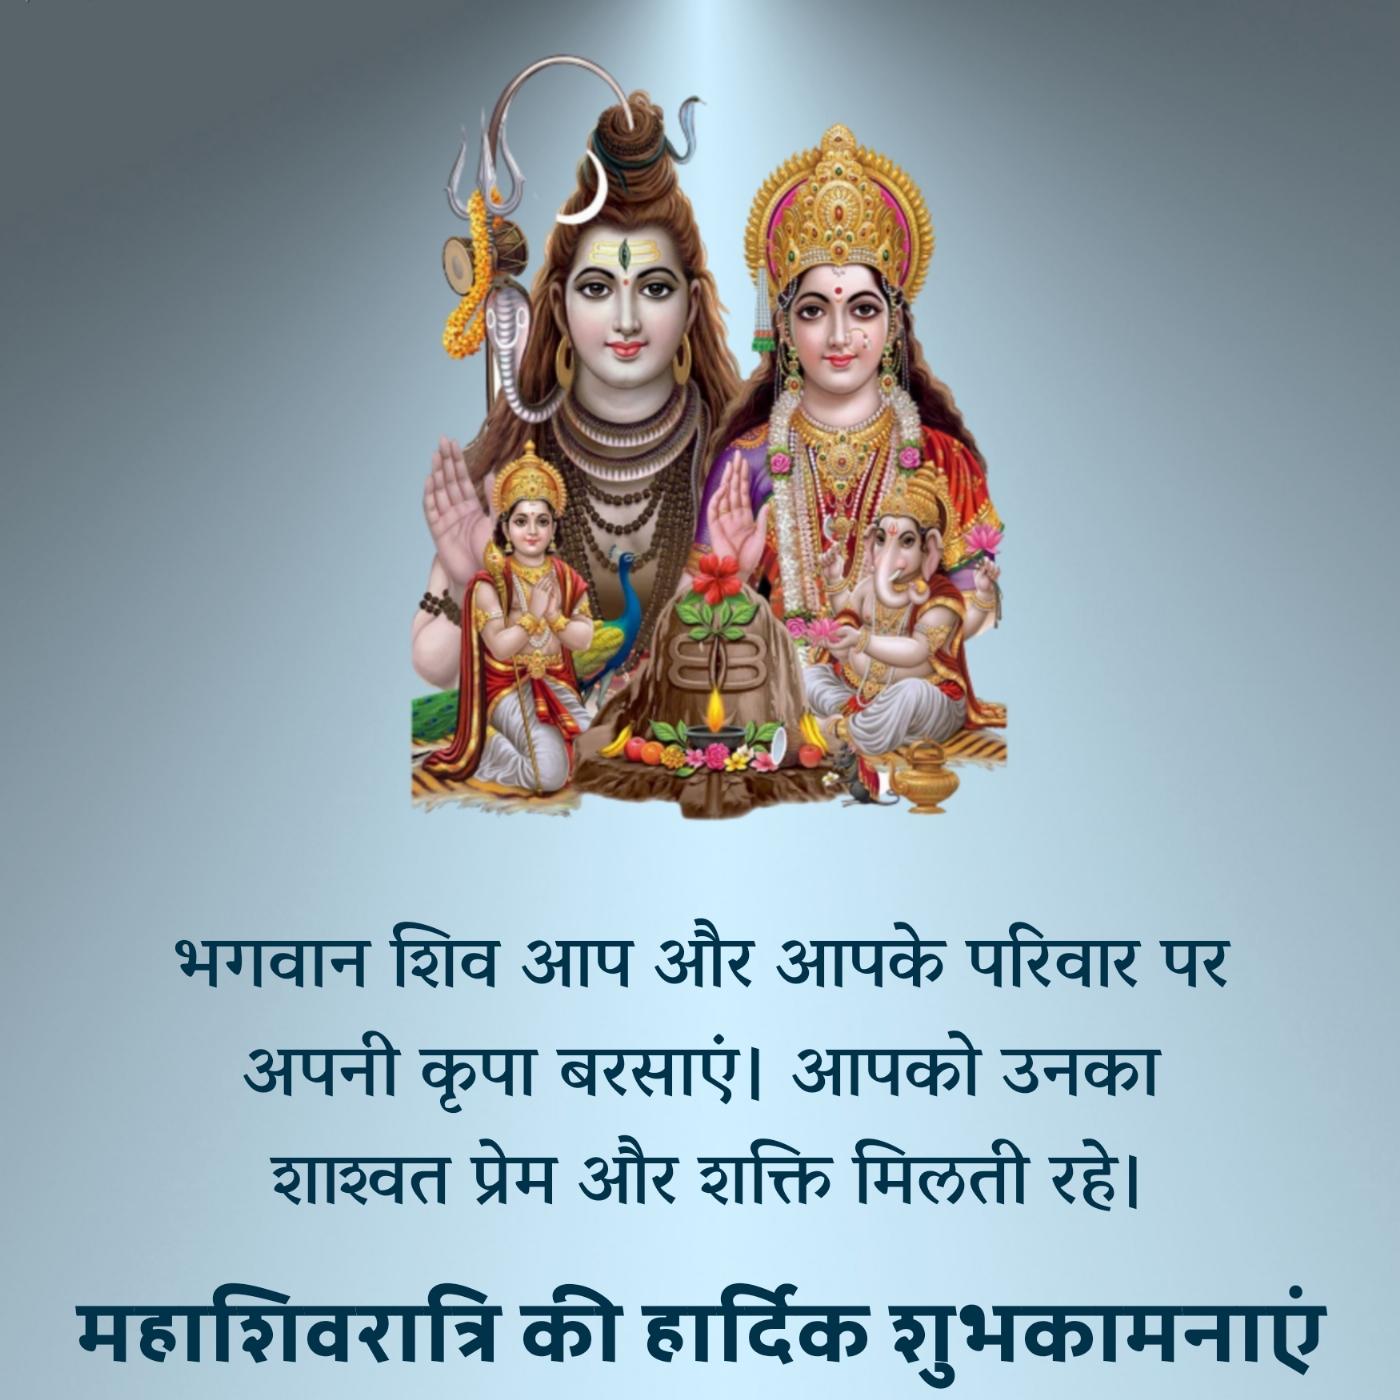 भगवान शिव आप और आपके परिवार पर अपनी कृपा बरसाएं